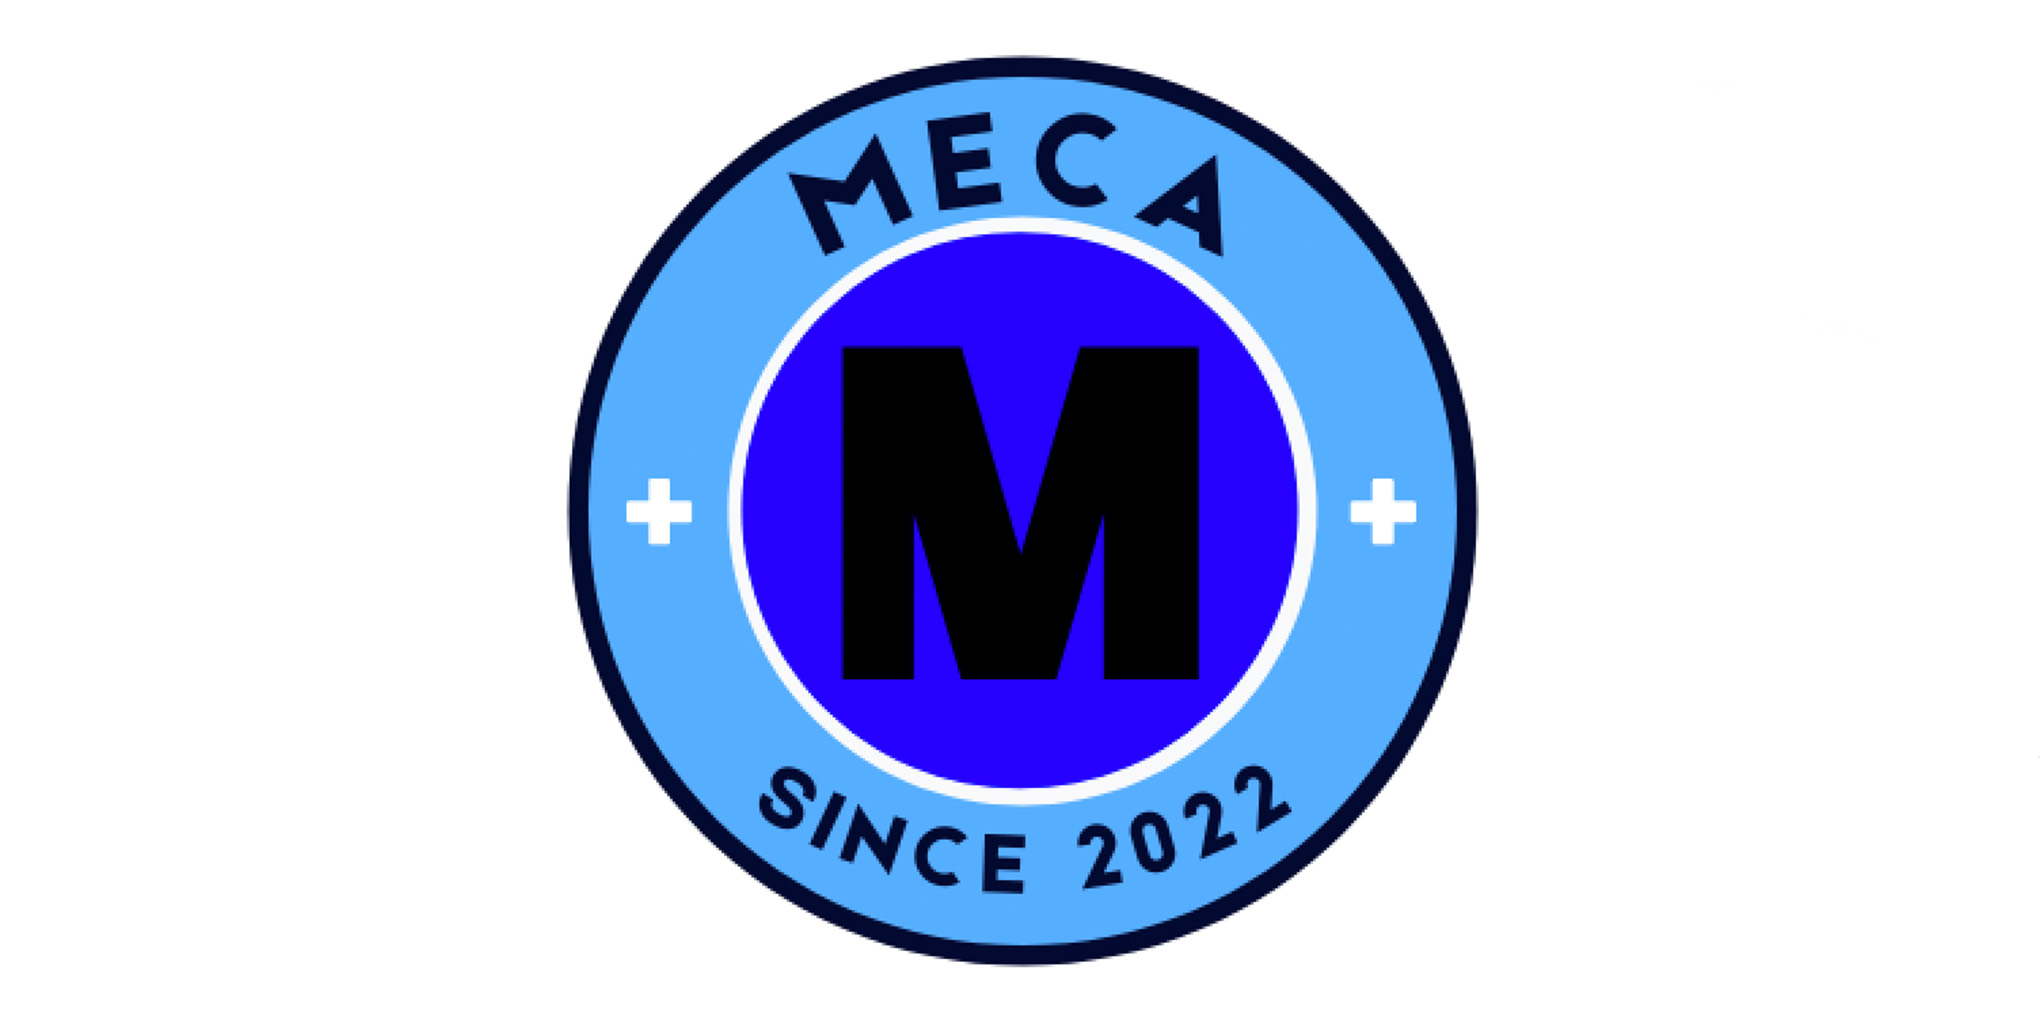 Meca logo image for events calendar